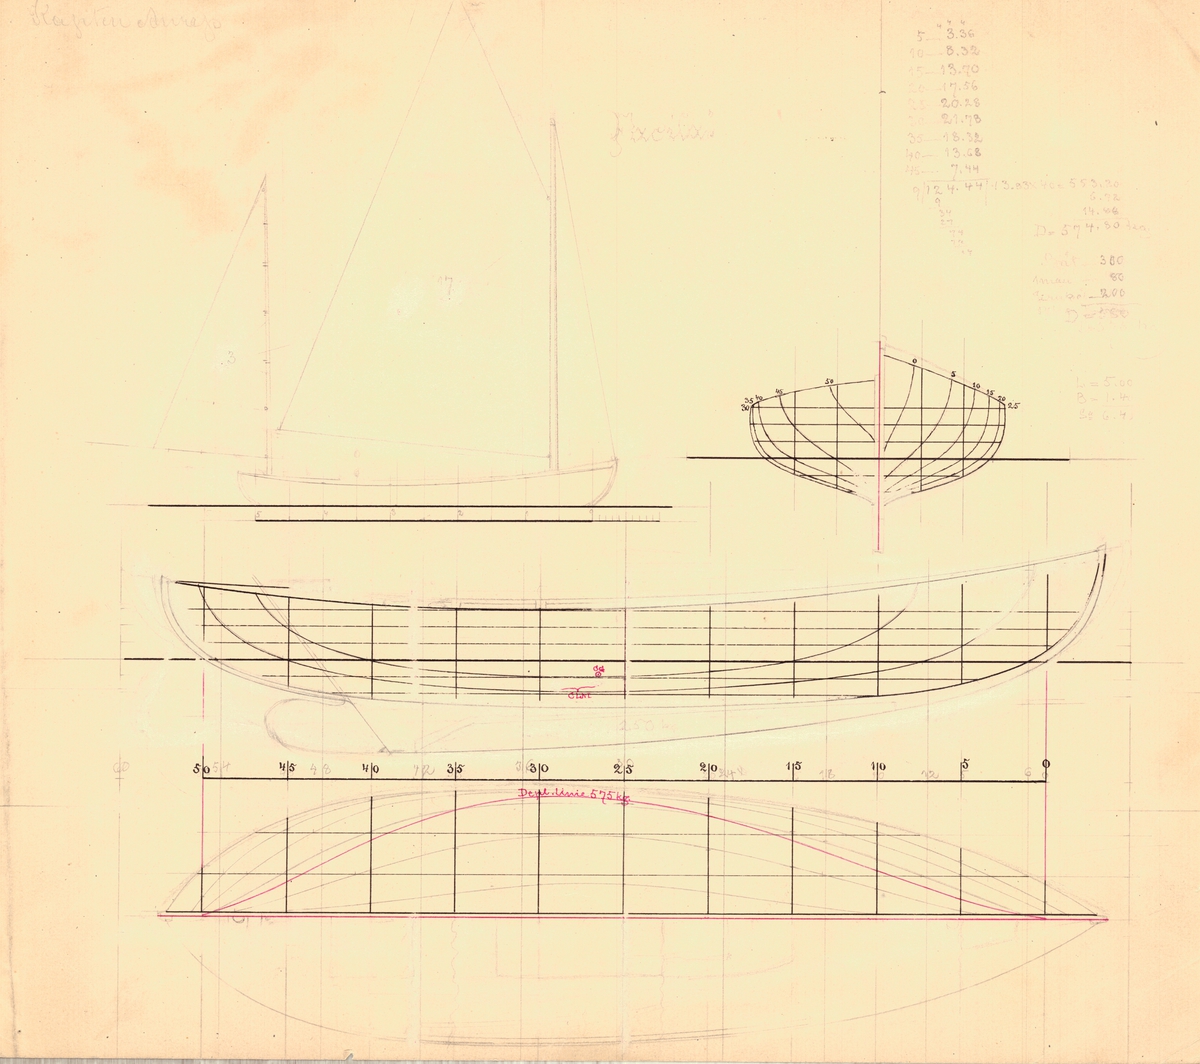 Tvåmastad segelbåt med centerbord.
Spantruta, rigg och sektionsritningar